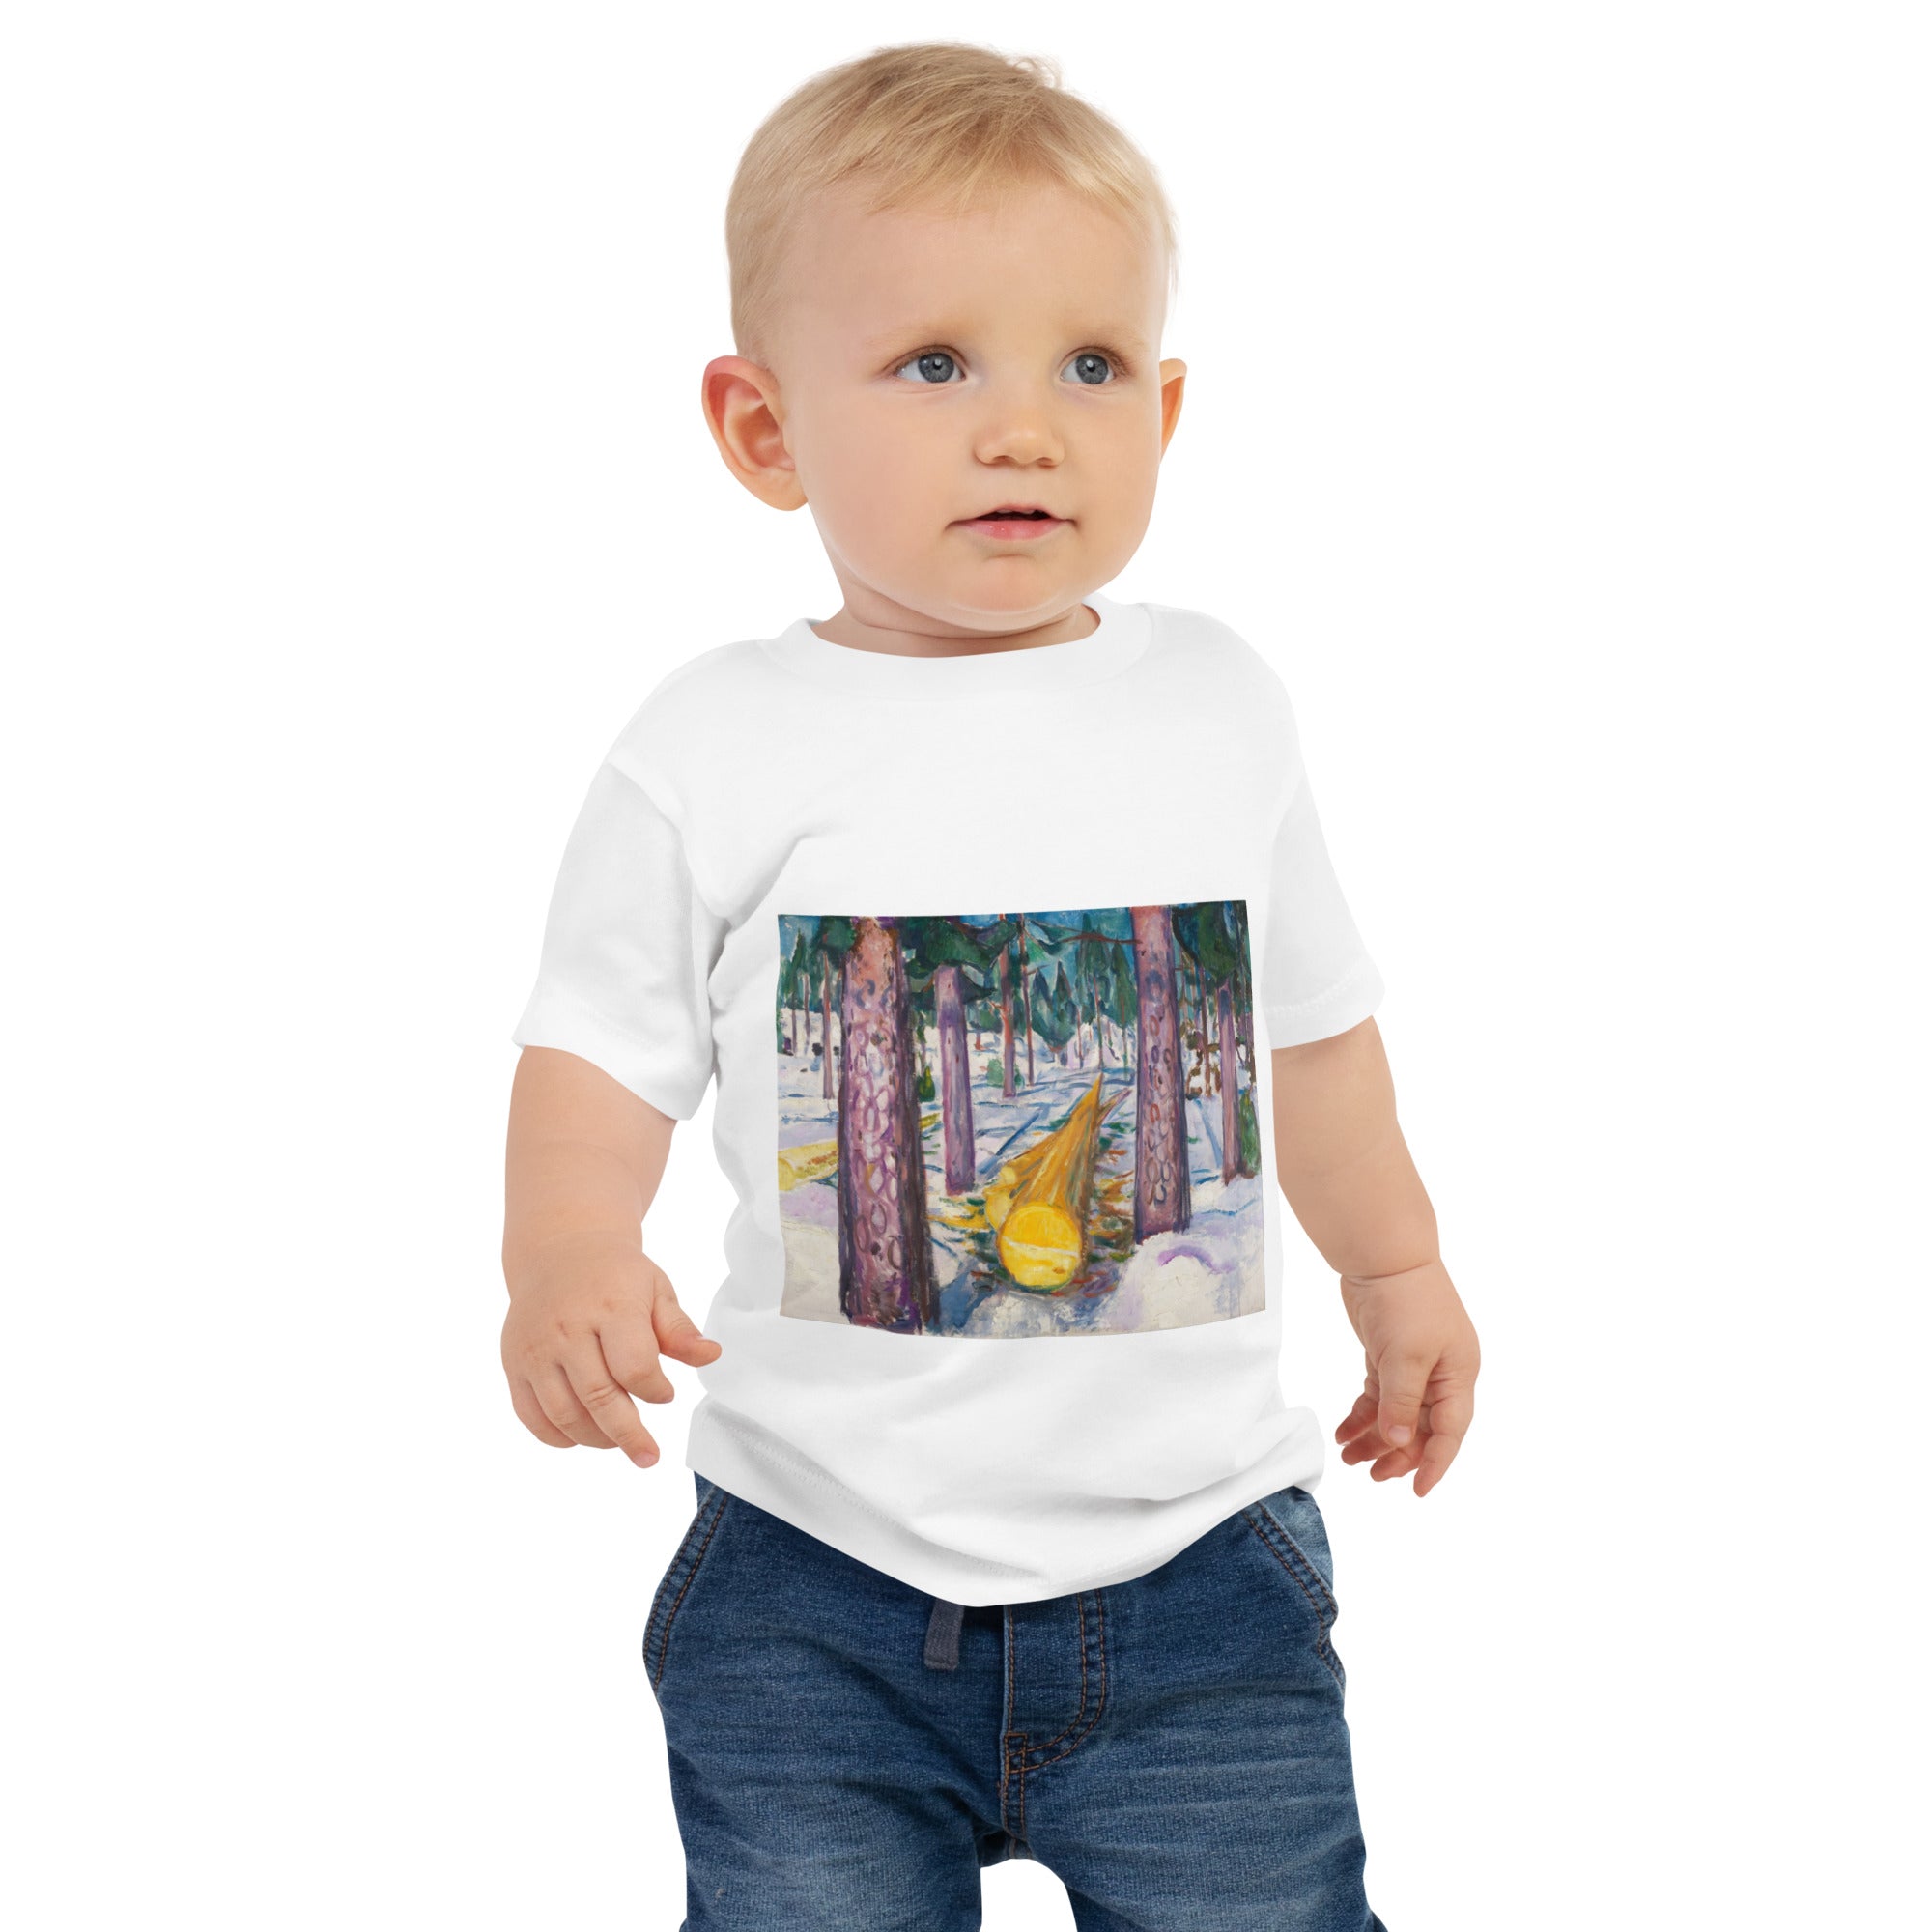 Edvard Munch „Der gelbe Baumstamm“, berühmtes Gemälde, Baby-T-Shirt | Premium-Kunst-T-Shirt für Babys